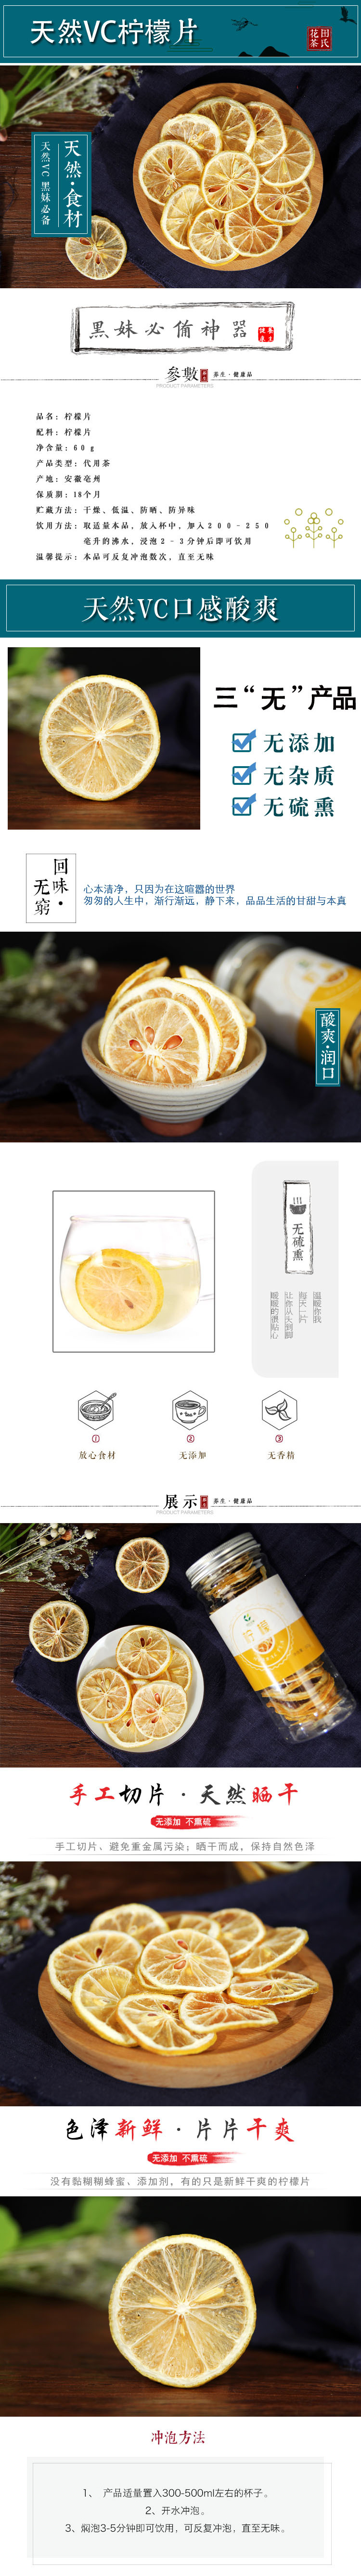 安徽特产 花果茶  干柠檬片60g罐装  新品上市